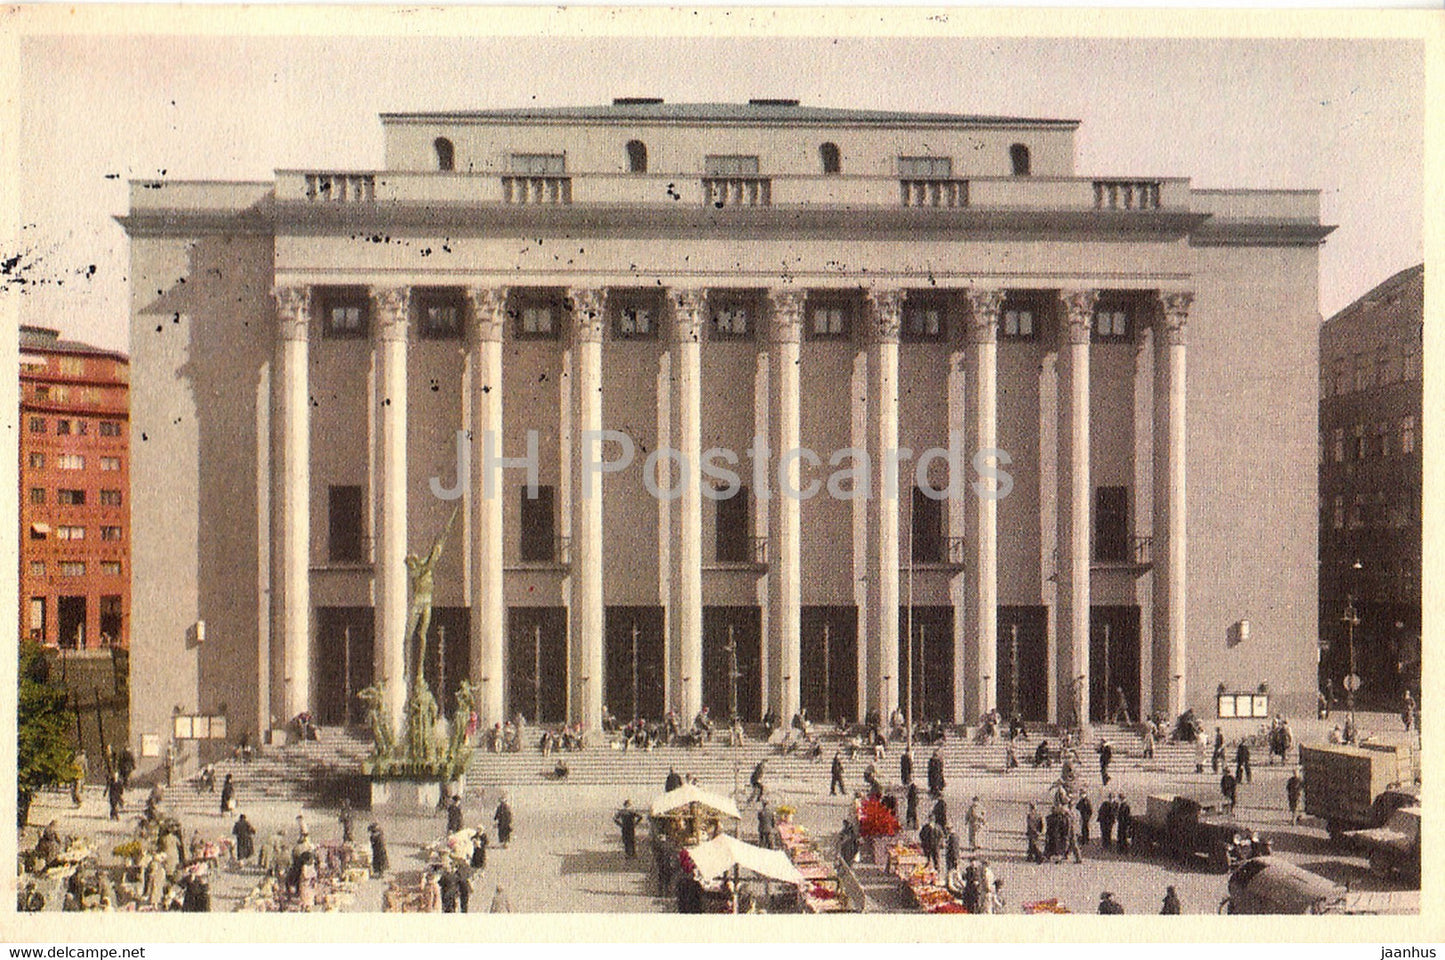 Stockholm - Konserthuset - Concert Hall - old postcard - 1937 - Sweden - used - JH Postcards